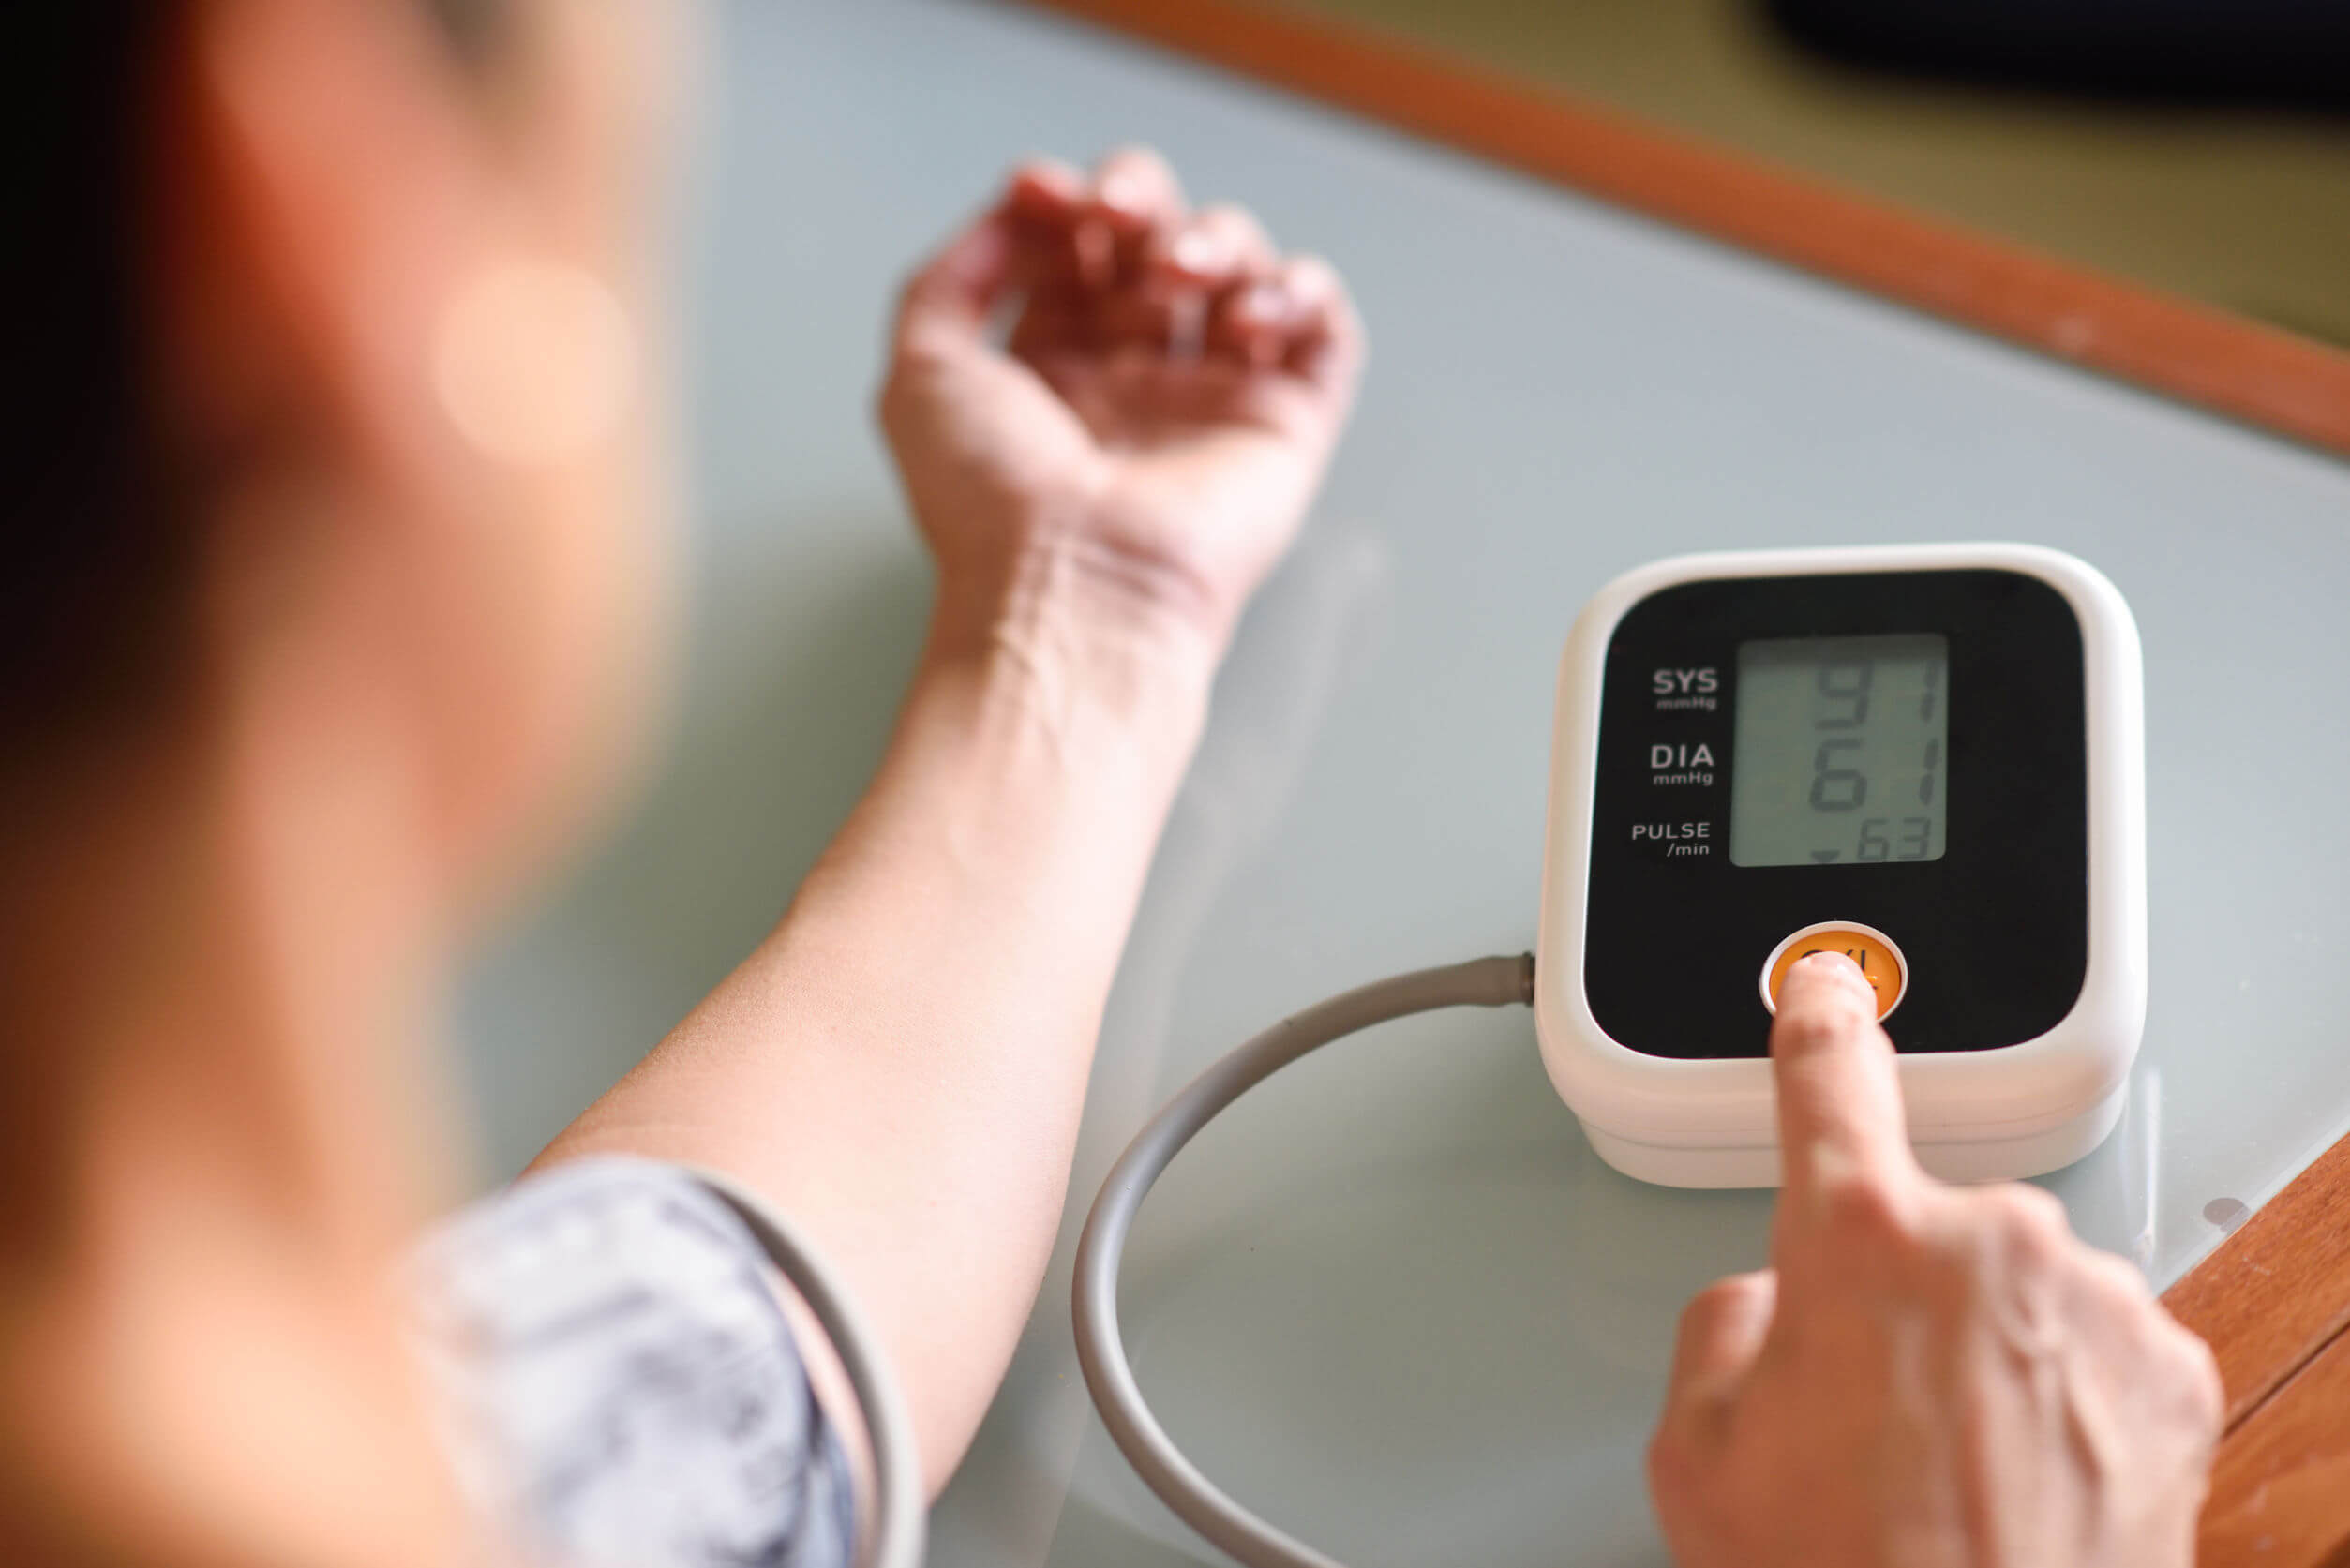 Tomar la presión arterial en el hogar permite diagnosticar hipertensión arterial